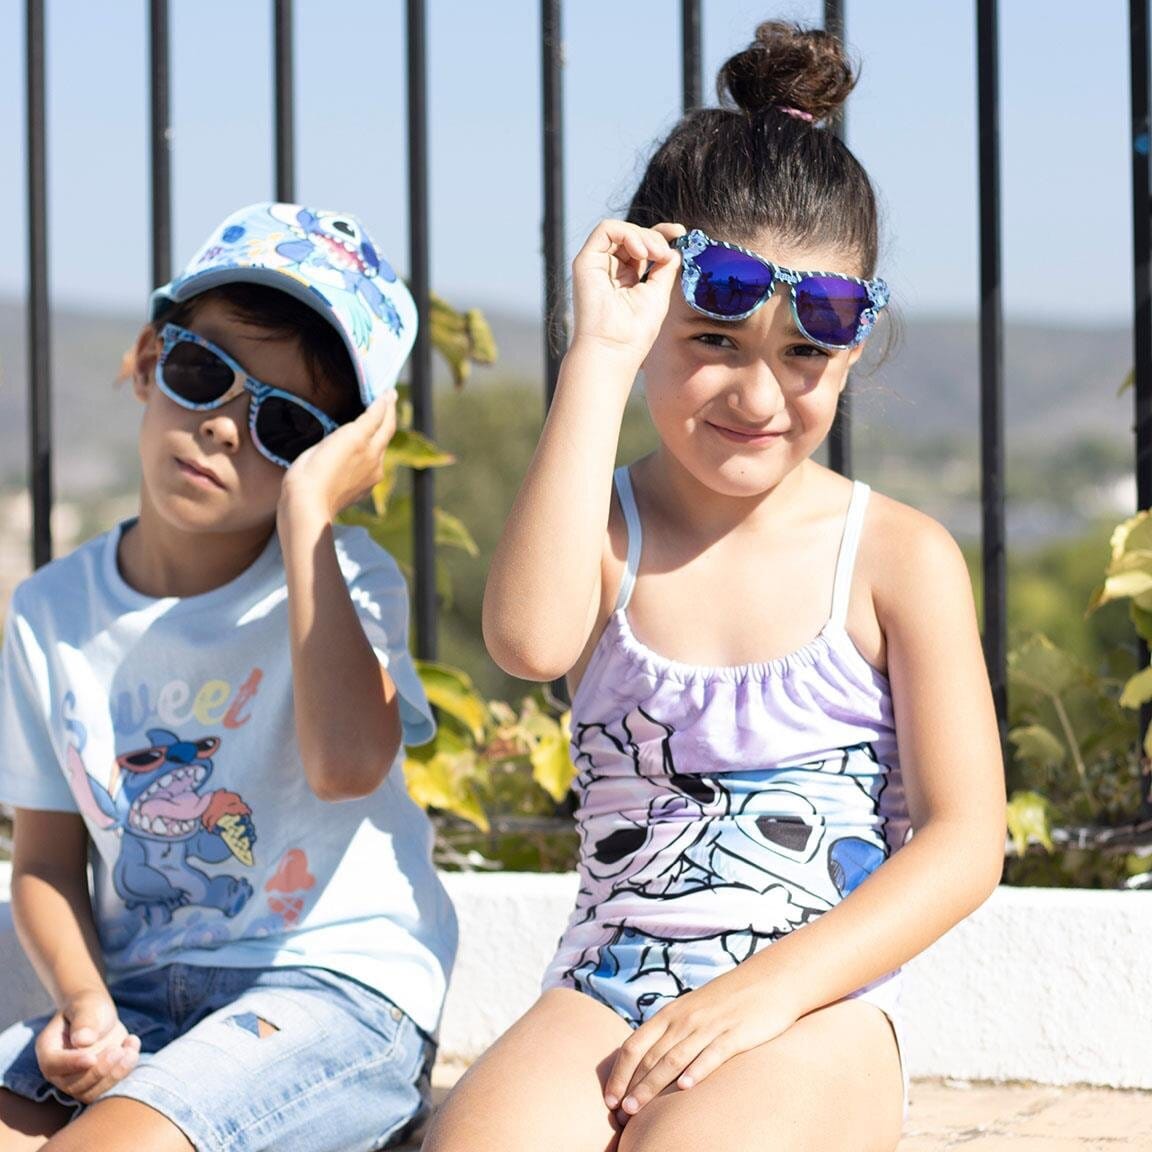 Lilo & Stitch - Sonnenbrille für Kinder